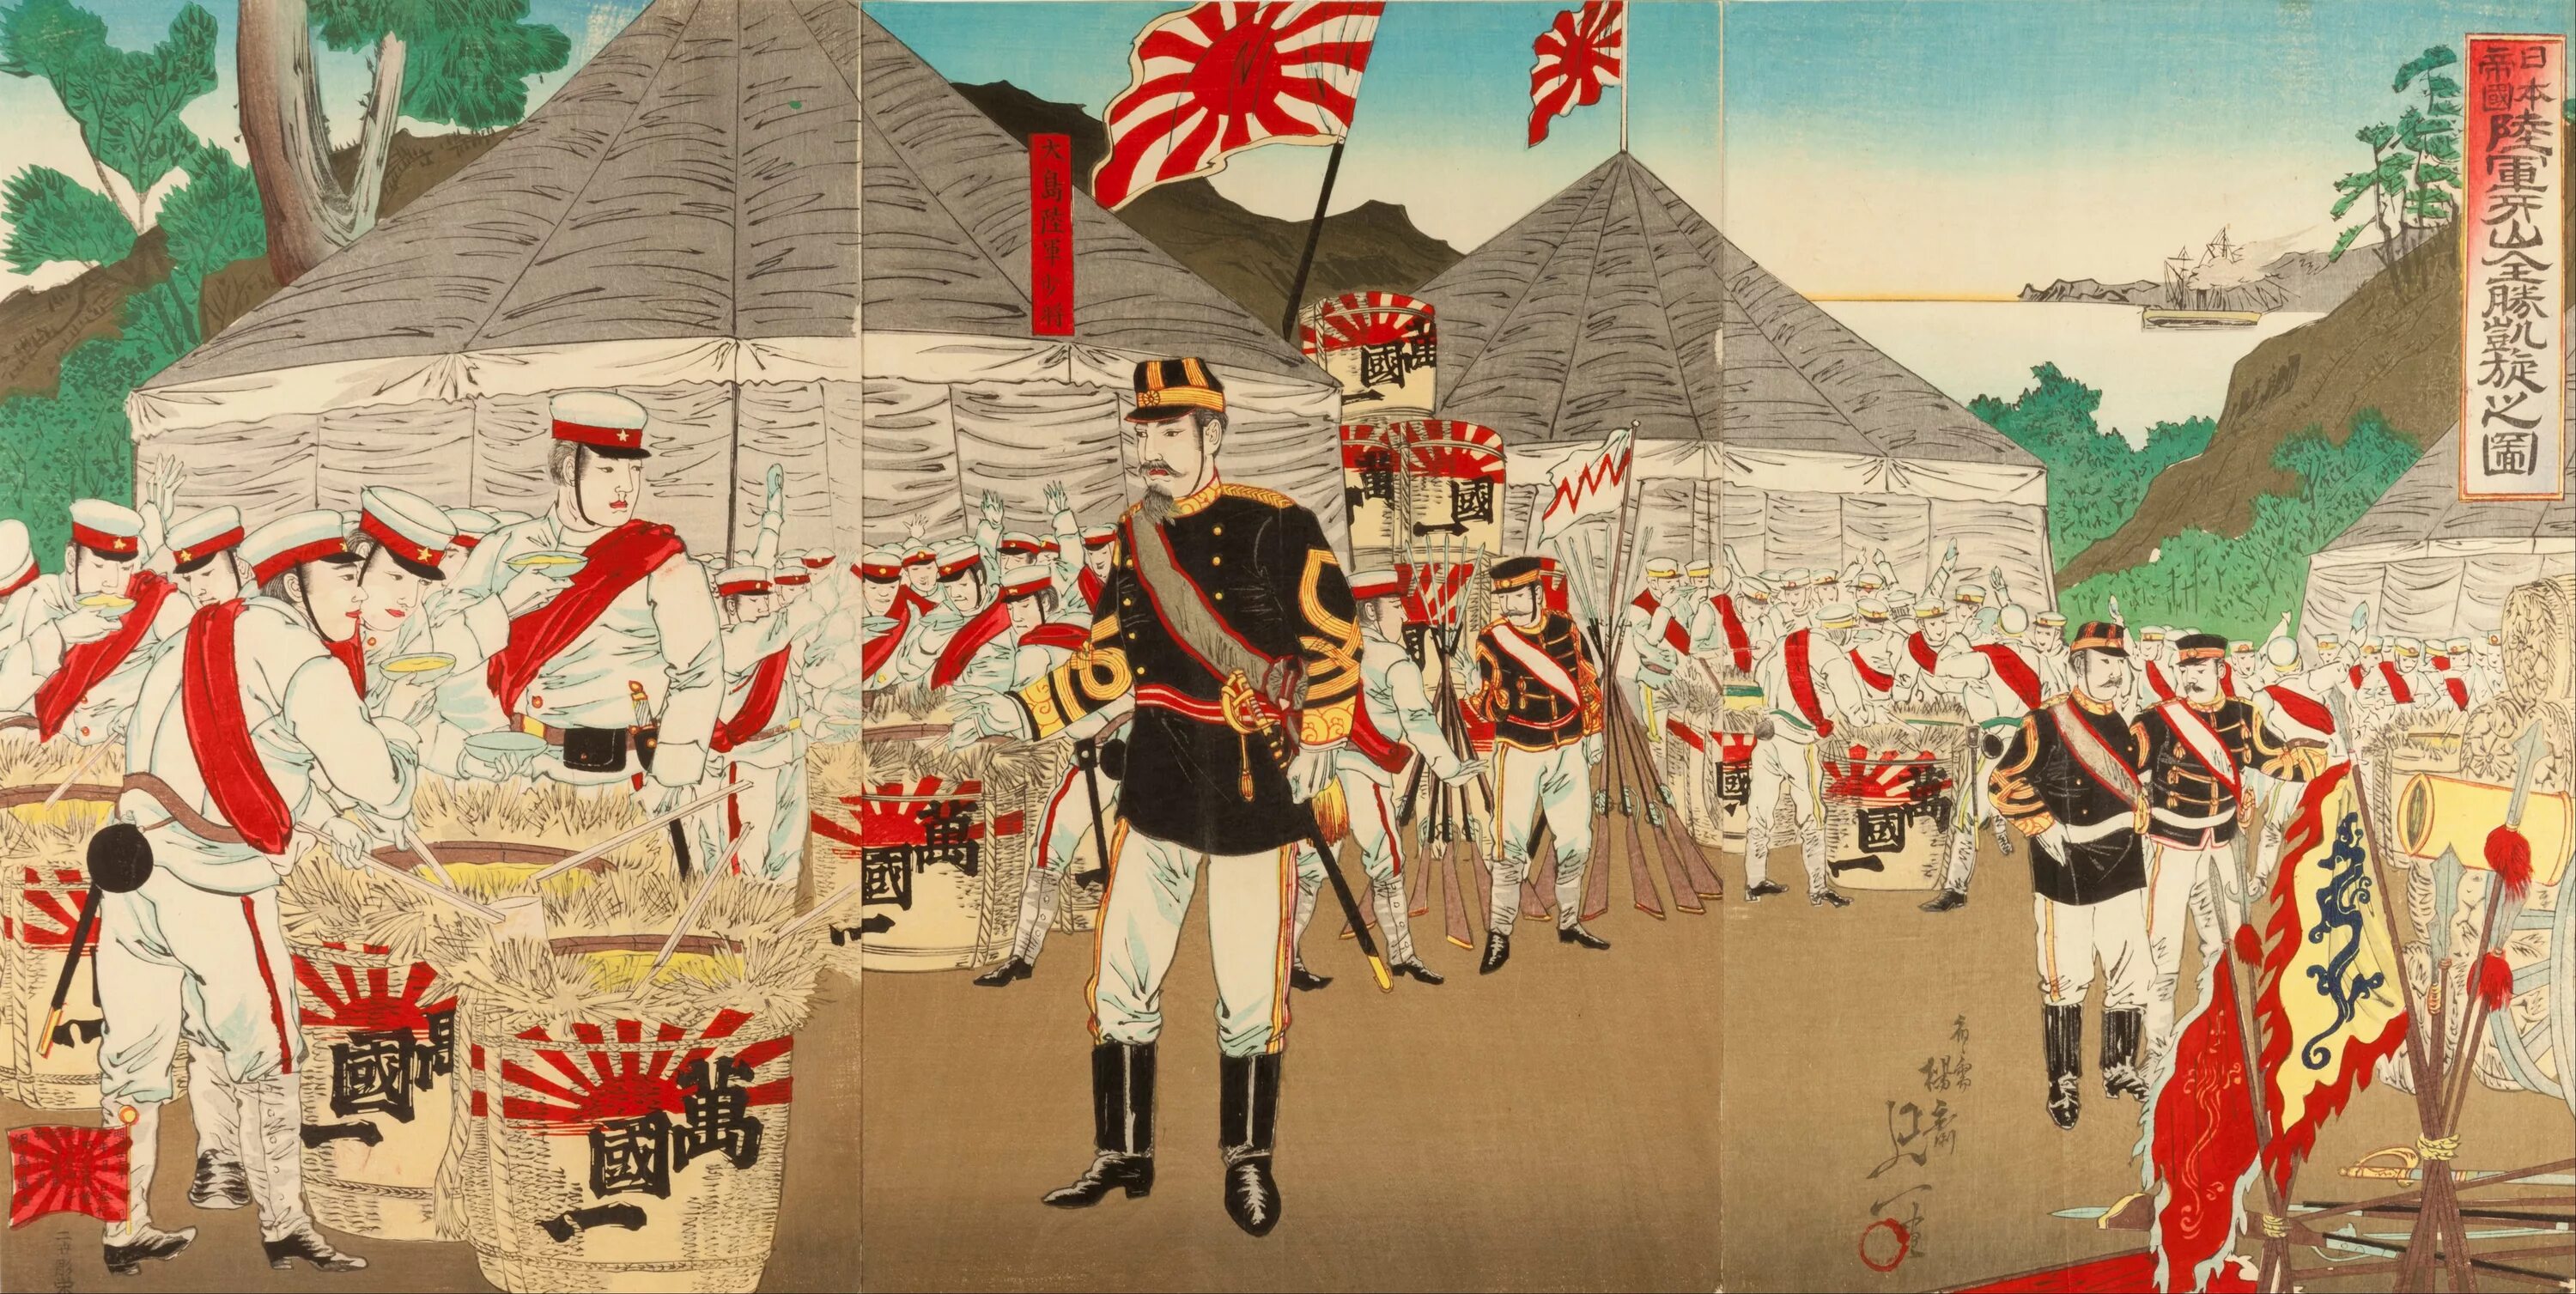 Императорская армия Японии революция Мэйдзи. Флаг императорской армии Японии. Флаг японской империи в эпоху Мэйдзи. Японский флаг Мэйдзи. Военный союз японии